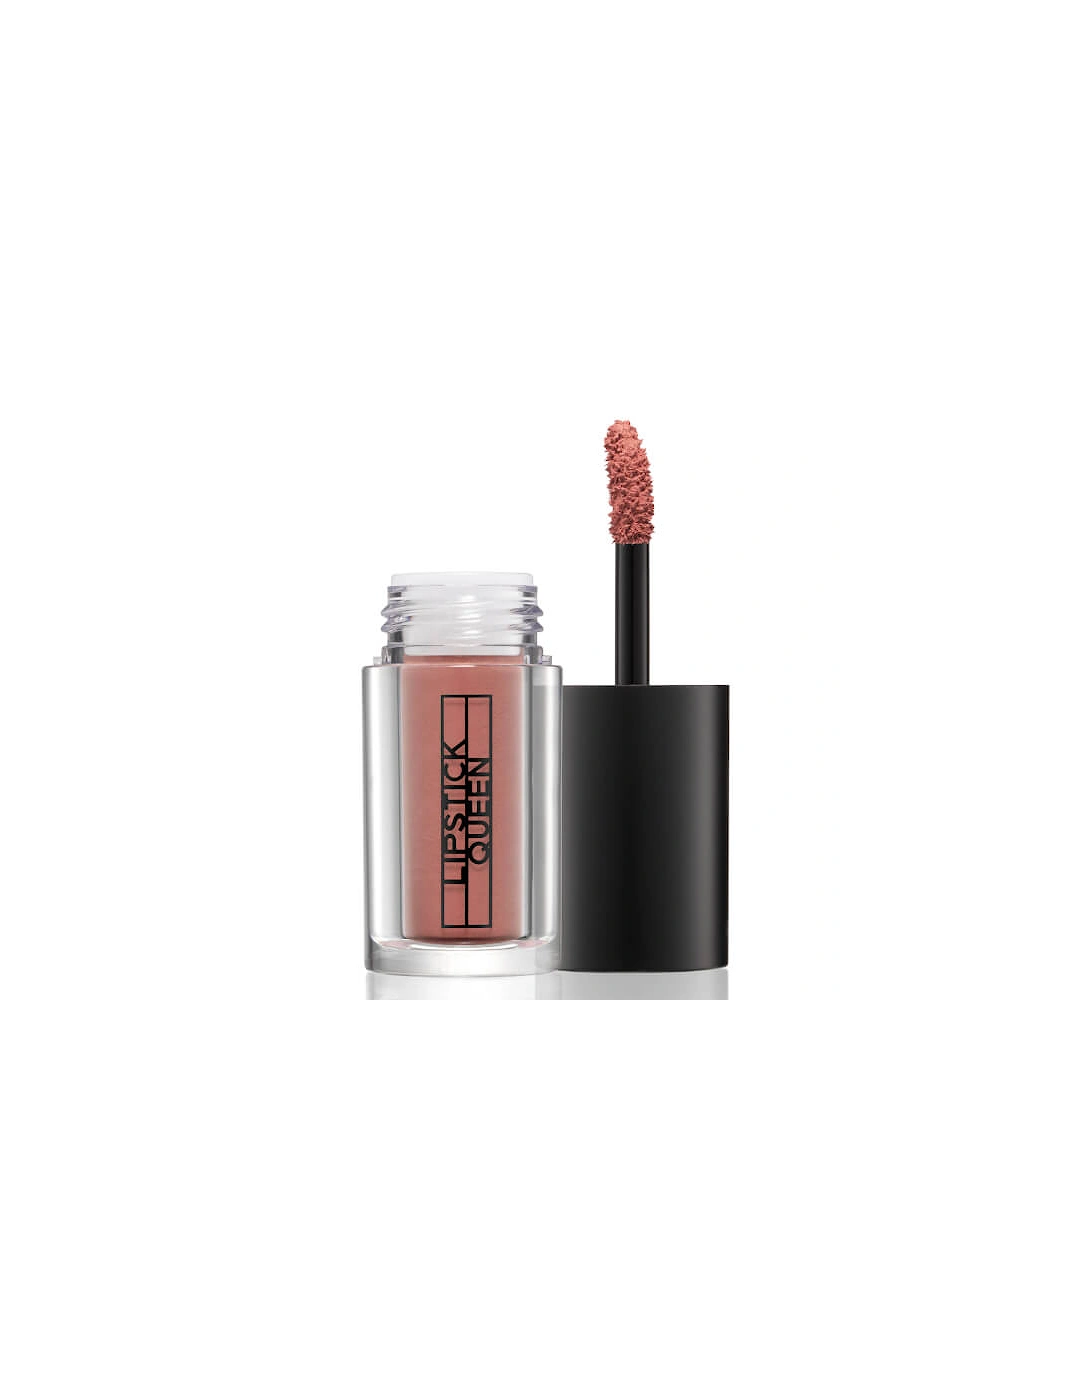 Lipdulgence Velvet Lip Powder - Cake Batter - Lipstick Queen, 2 of 1